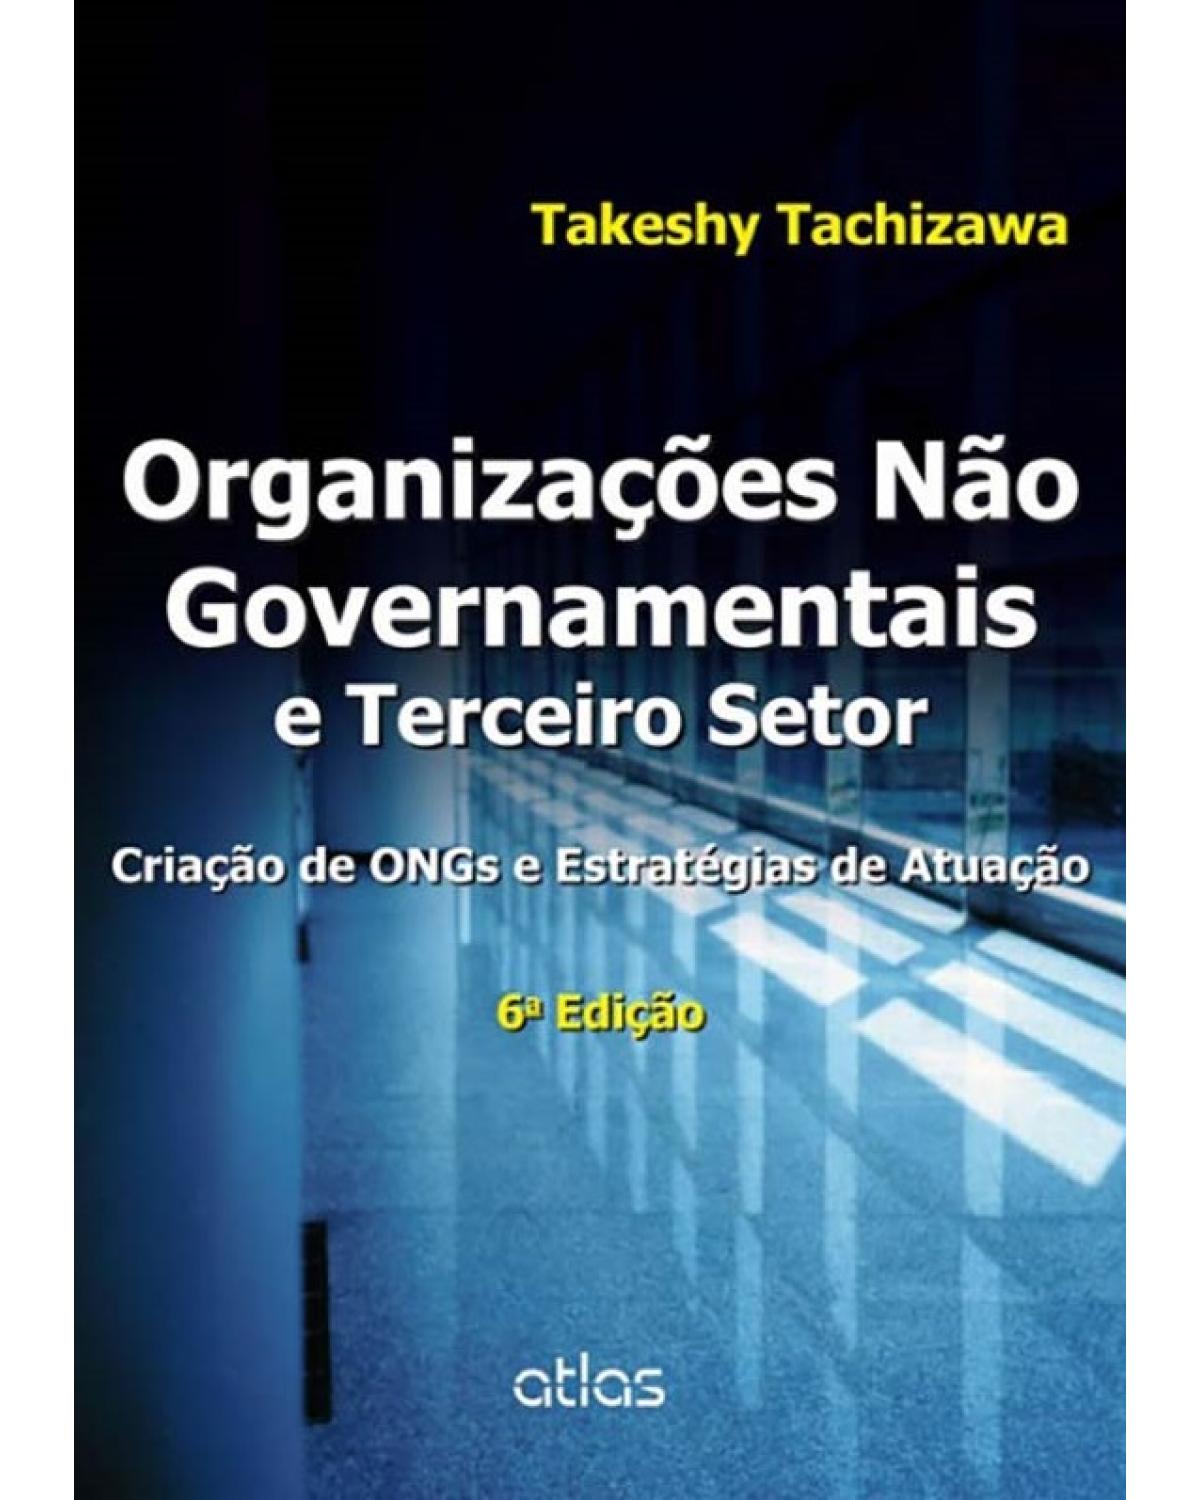 Organizações não governamentais e terceiro setor - Criação de ONGs e estratégias de atuação - 6ª Edição | 2014